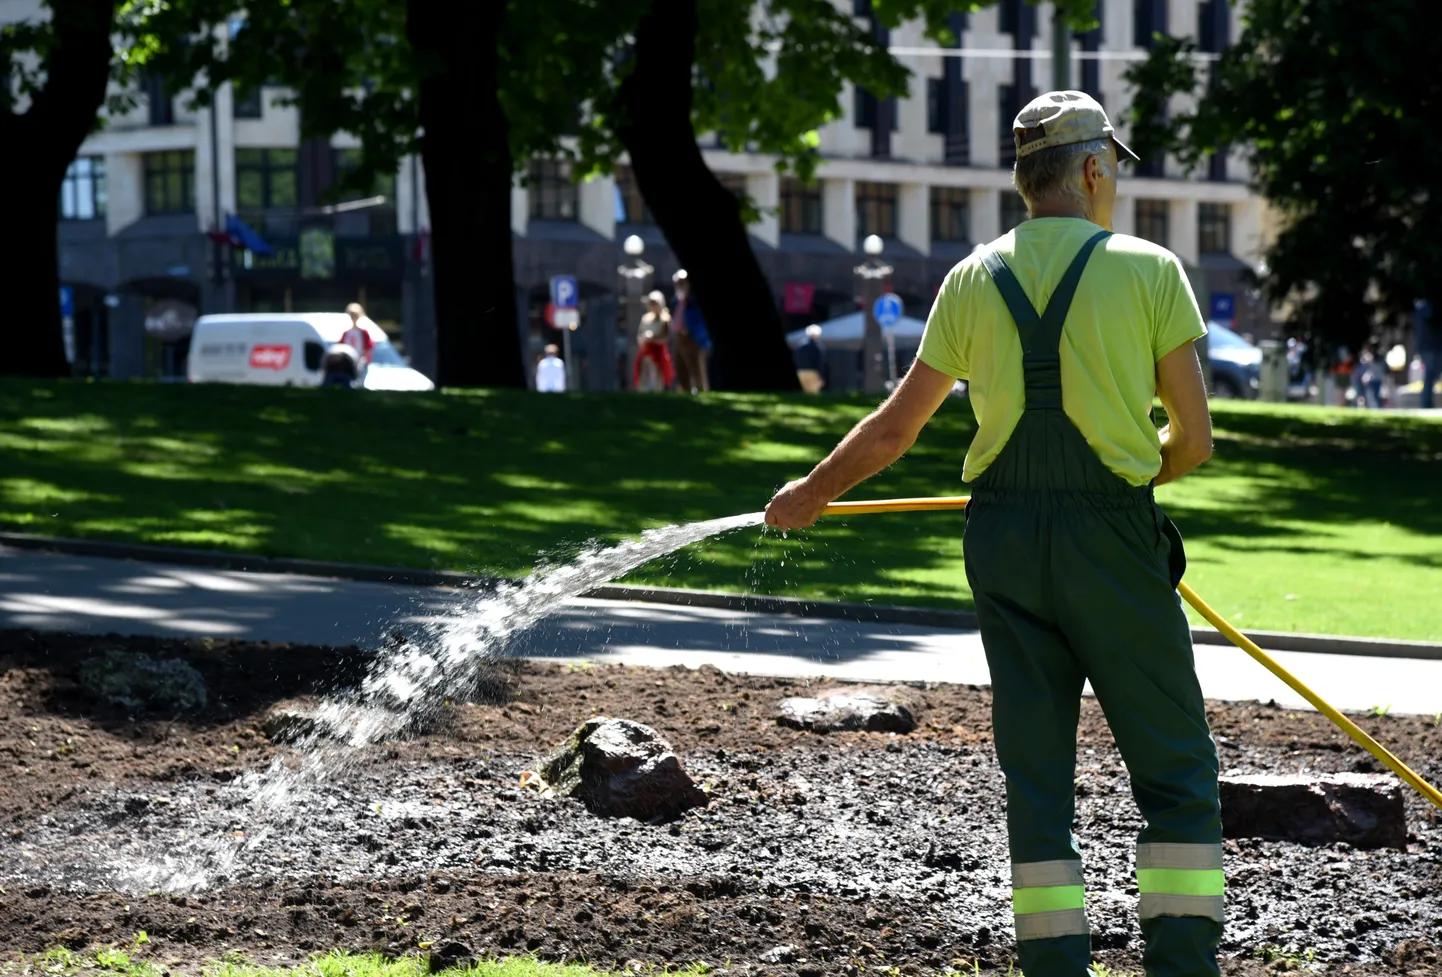 "Rīgas dārzi un parki" darbinieks laista puķu dobi Basejkalnā. Ilustratīvs attēls